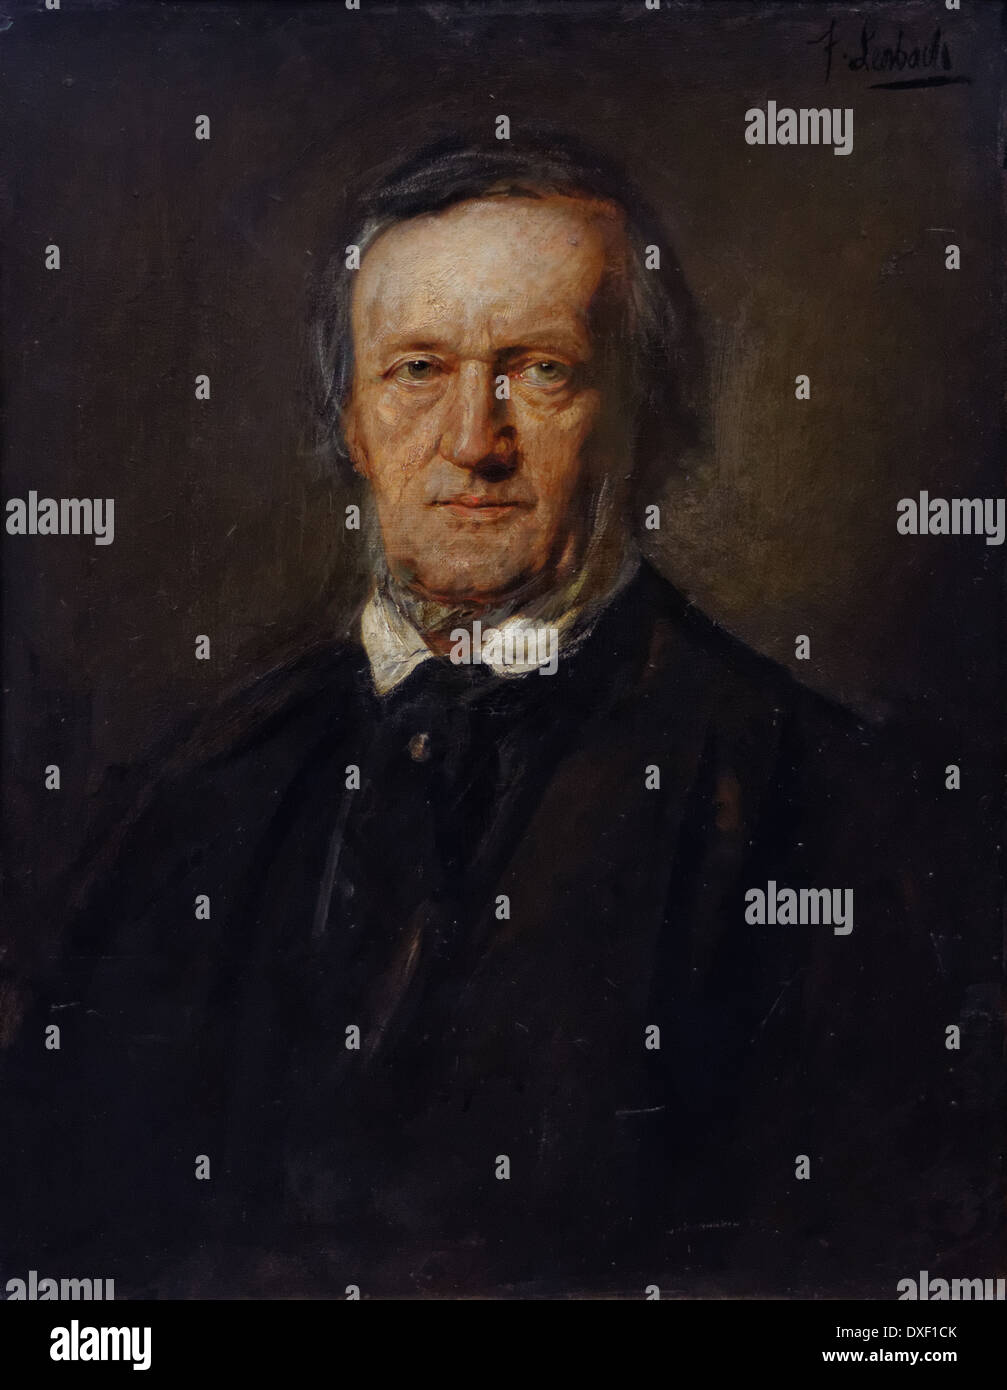 Franz von Lenbach - Ritratto di Richard Wagner - 1895 - XIX secolo - scuola tedesca - Alte Nationalgalerie - Berlino Foto Stock